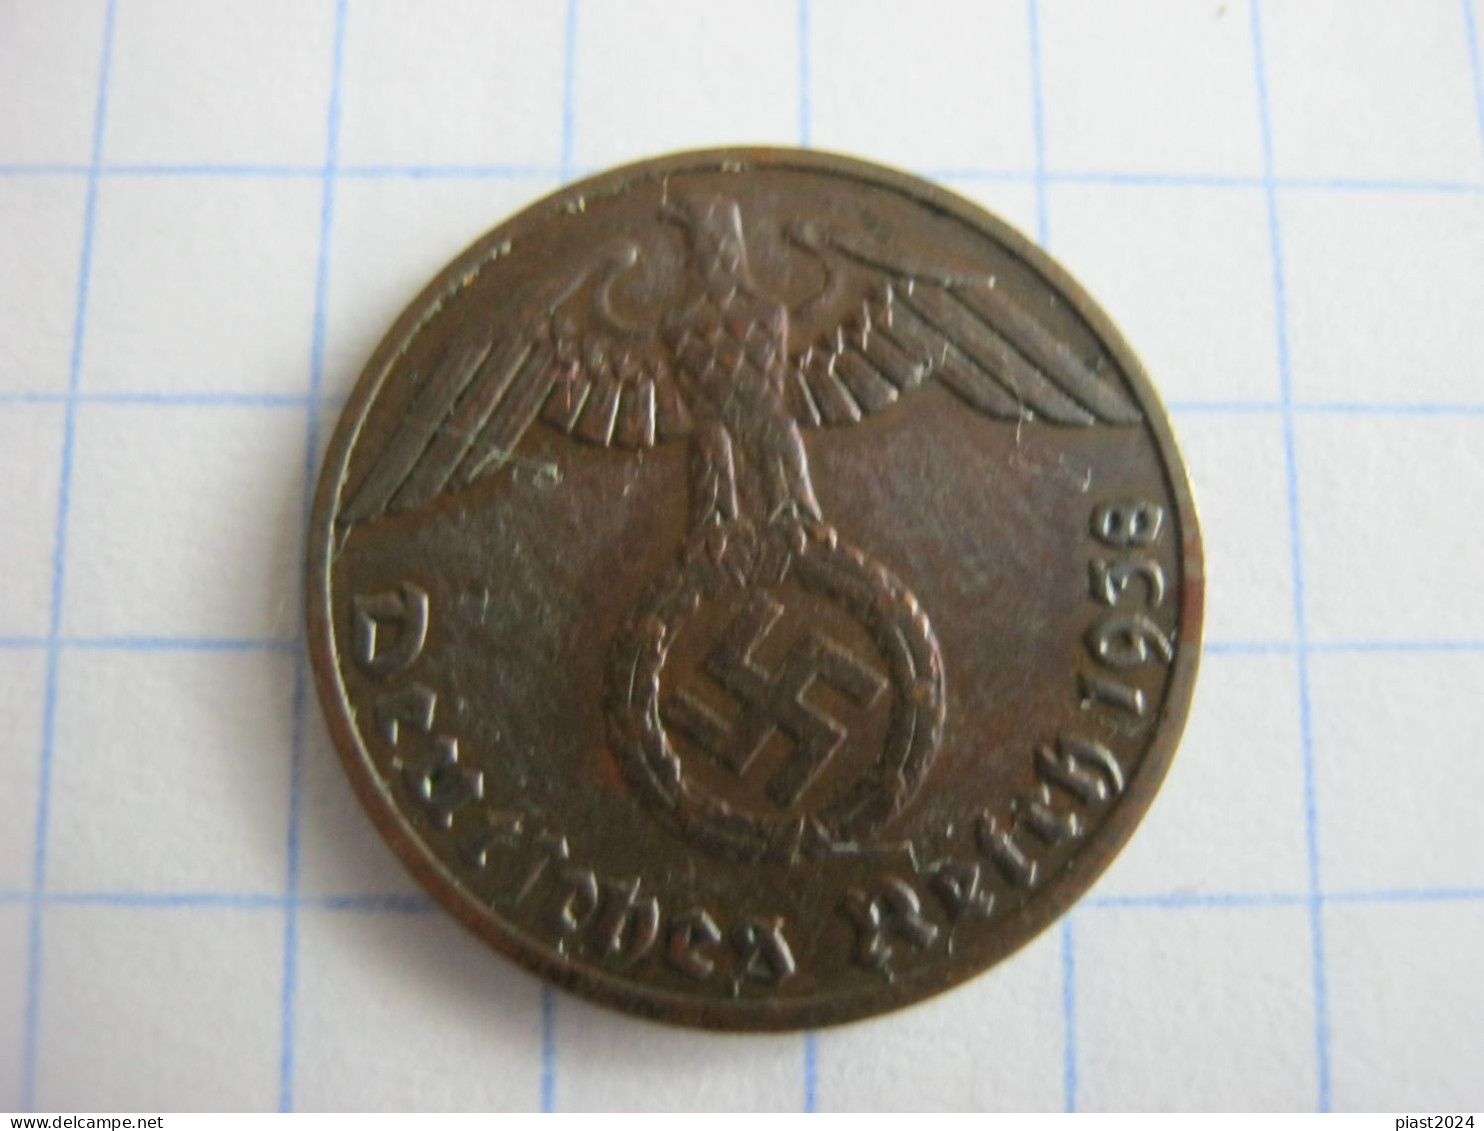 Germany 1 Reichspfennig 1938 E - 1 Reichspfennig